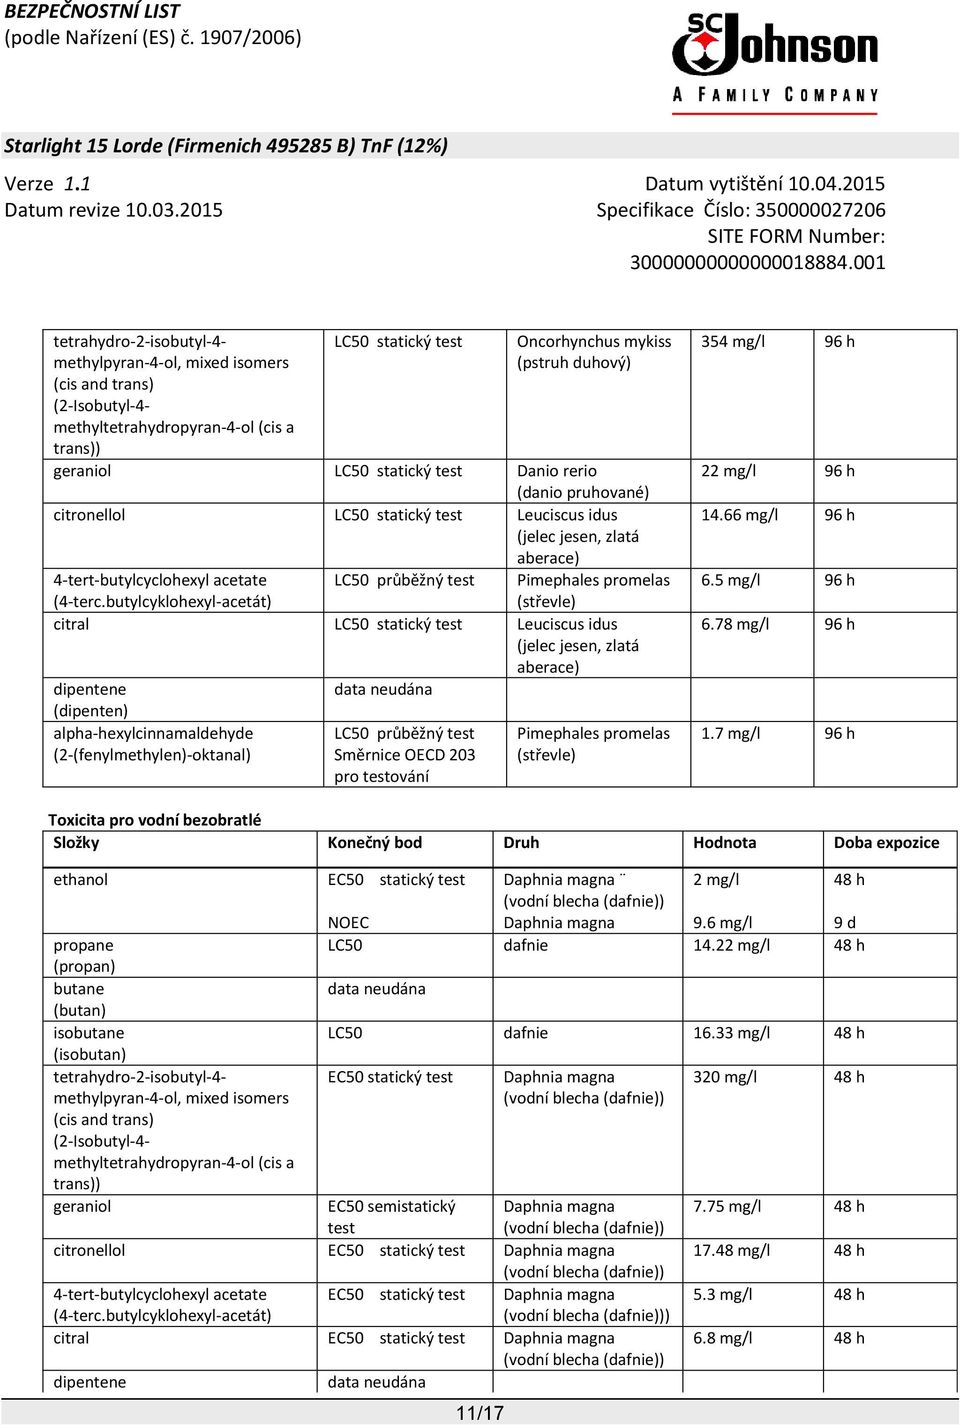 citral LC50 statický test Leuciscus idus (jelec jesen, zlatá aberace) LC50 průběžný test Pimephales promelas Směrnice OECD 203 (střevle) pro testování 354 mg/l 96 h 22 mg/l 96 h 14.66 mg/l 96 h 6.